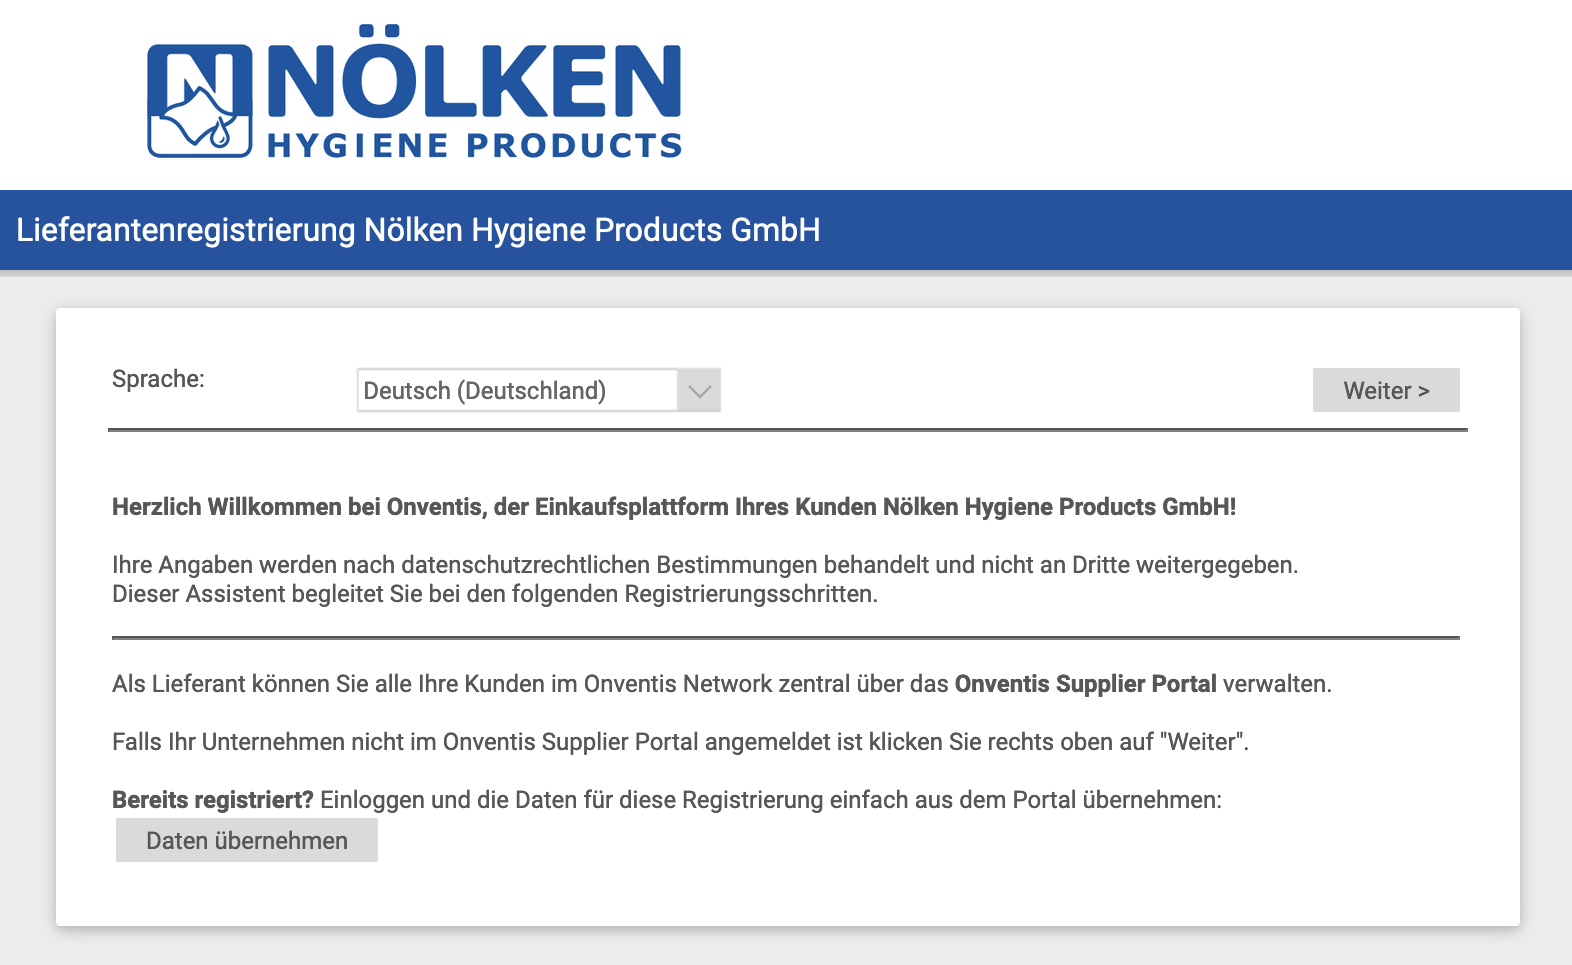 Link zur Lieferantenregistrierung der Nölken Hygiene Products GmbH.